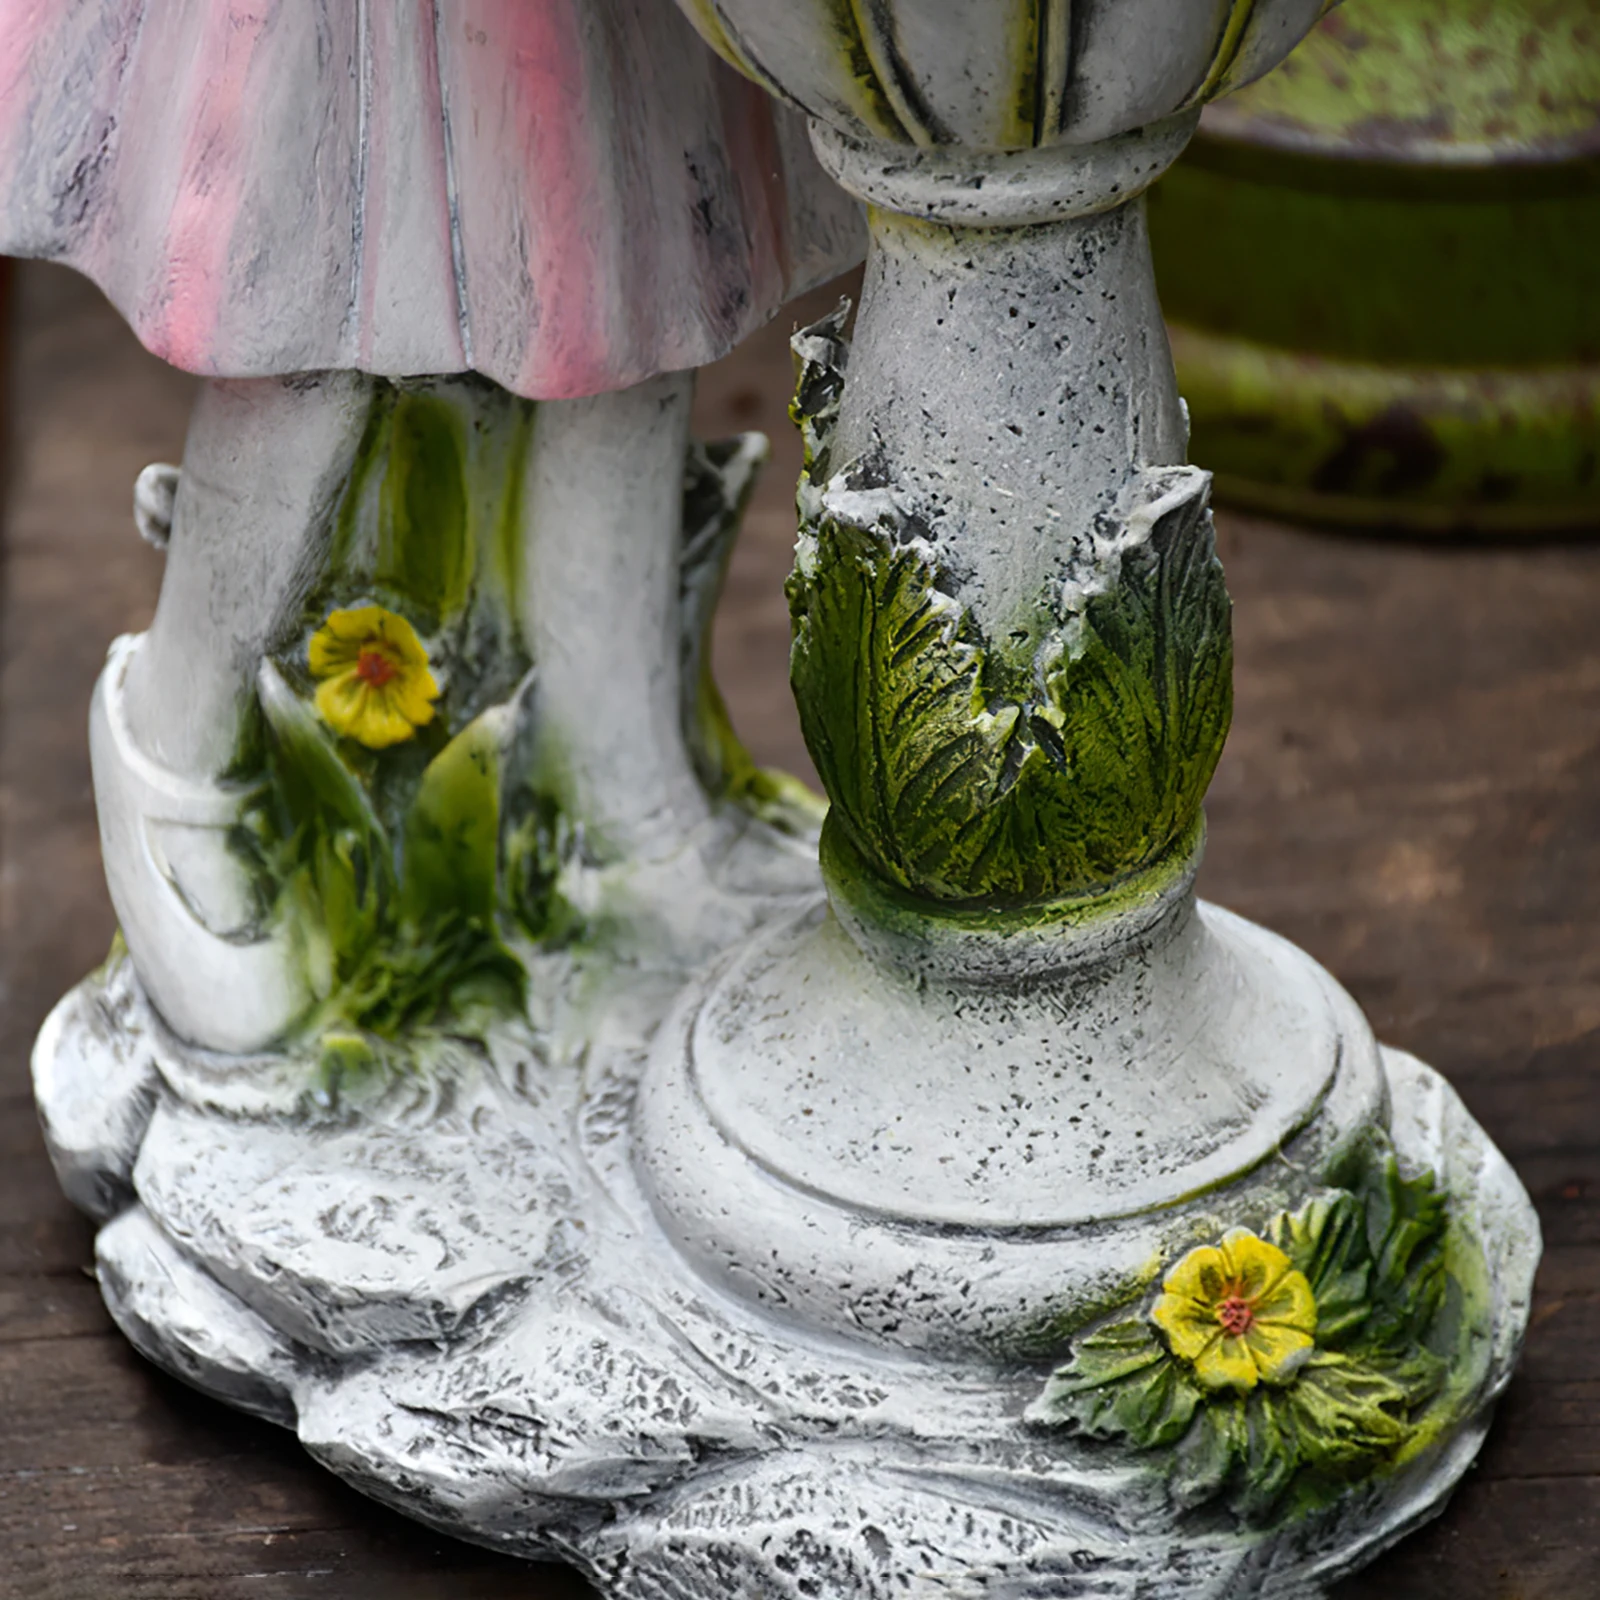 Статуя цветочной феи, украшение солнечным светом, украшение для сада во внутреннем дворе, скульптура Ангела из смолы, Микроландшафтный декор